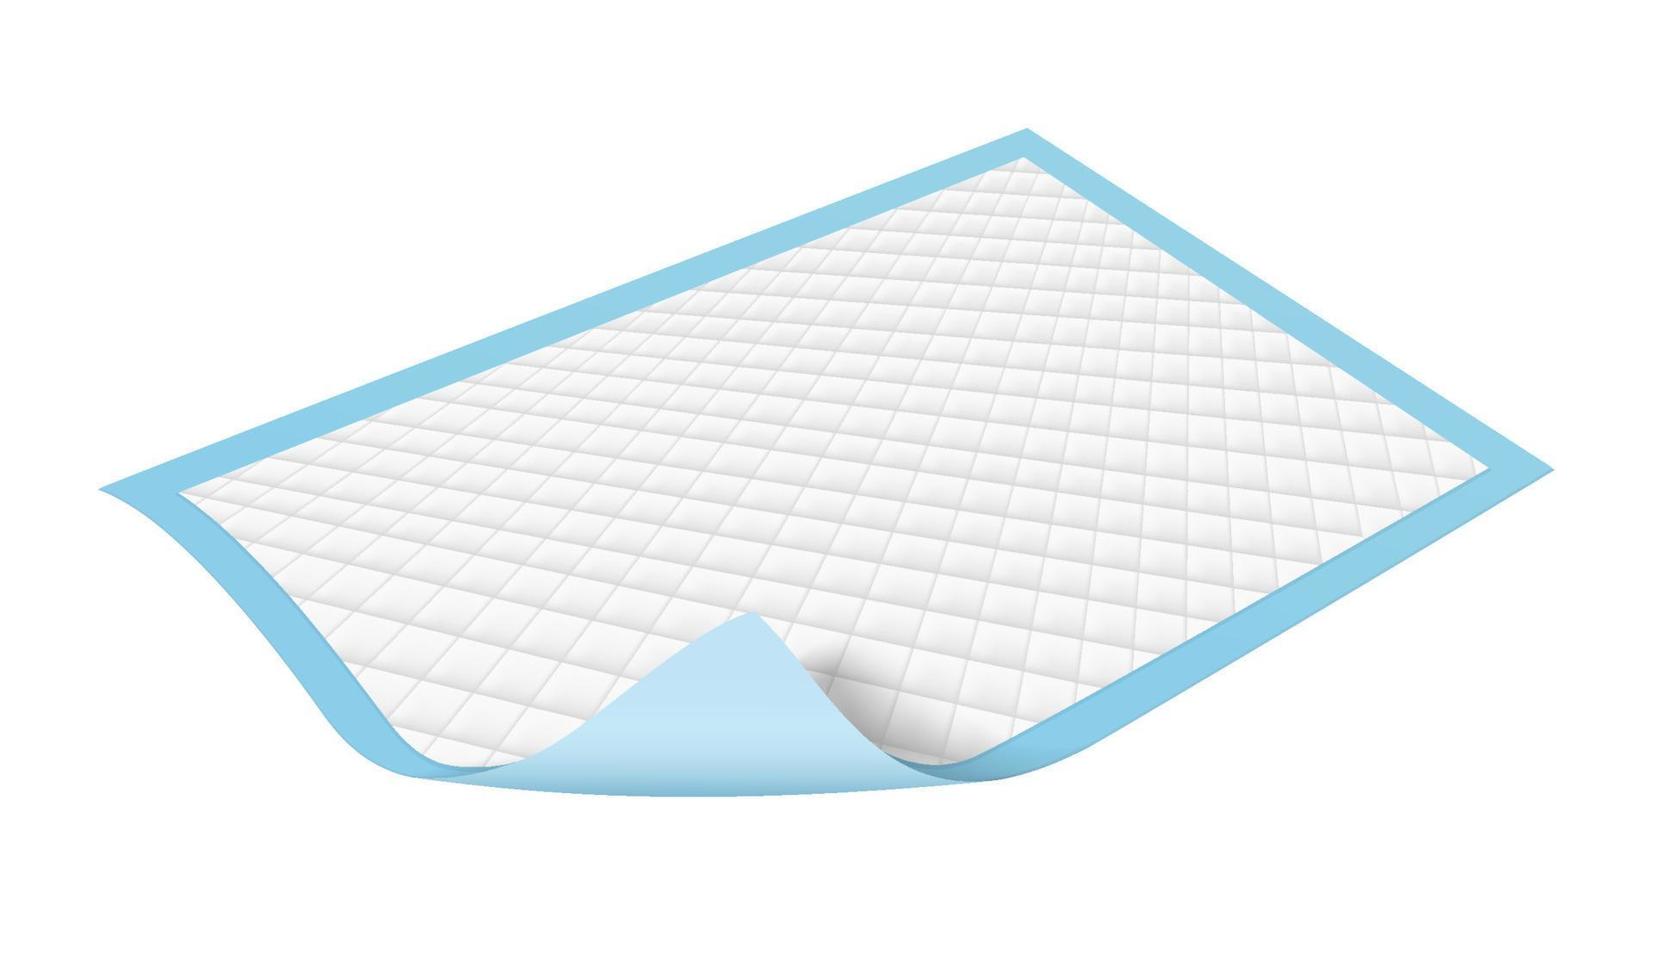 serviettes pour incontinence utilisées pour protéger les selles et la saleté des adultes. au lit du patient coussinets de protection jetables isolés sur fond blanc. fichier eps réaliste. vecteur